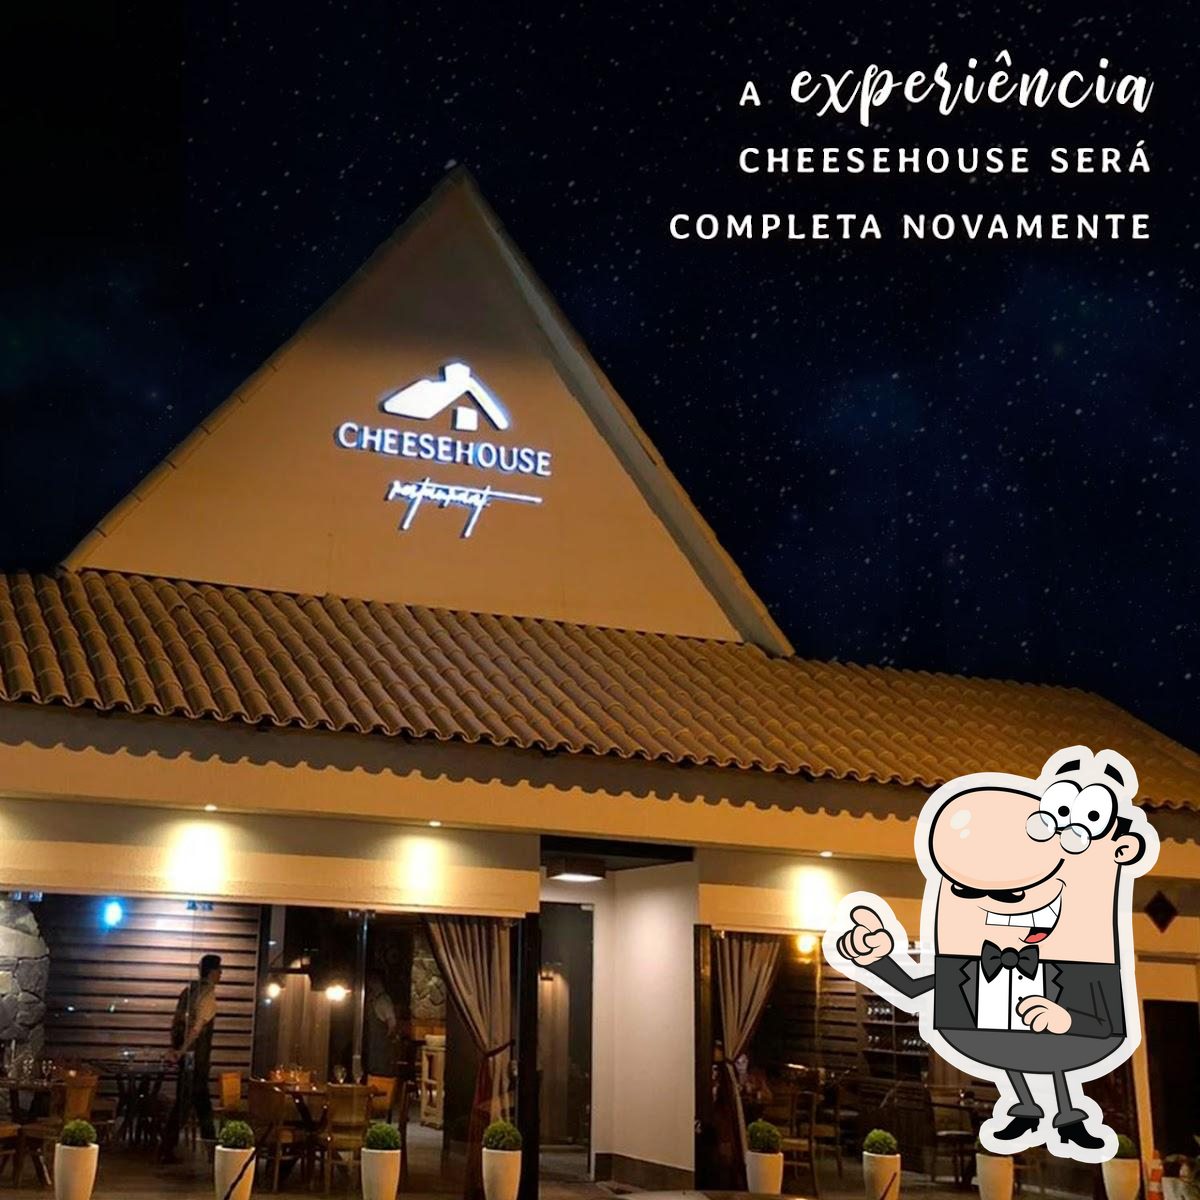 CheeseHouse Restaurante, Goiânia, R. 54 - Menu do restaurante e